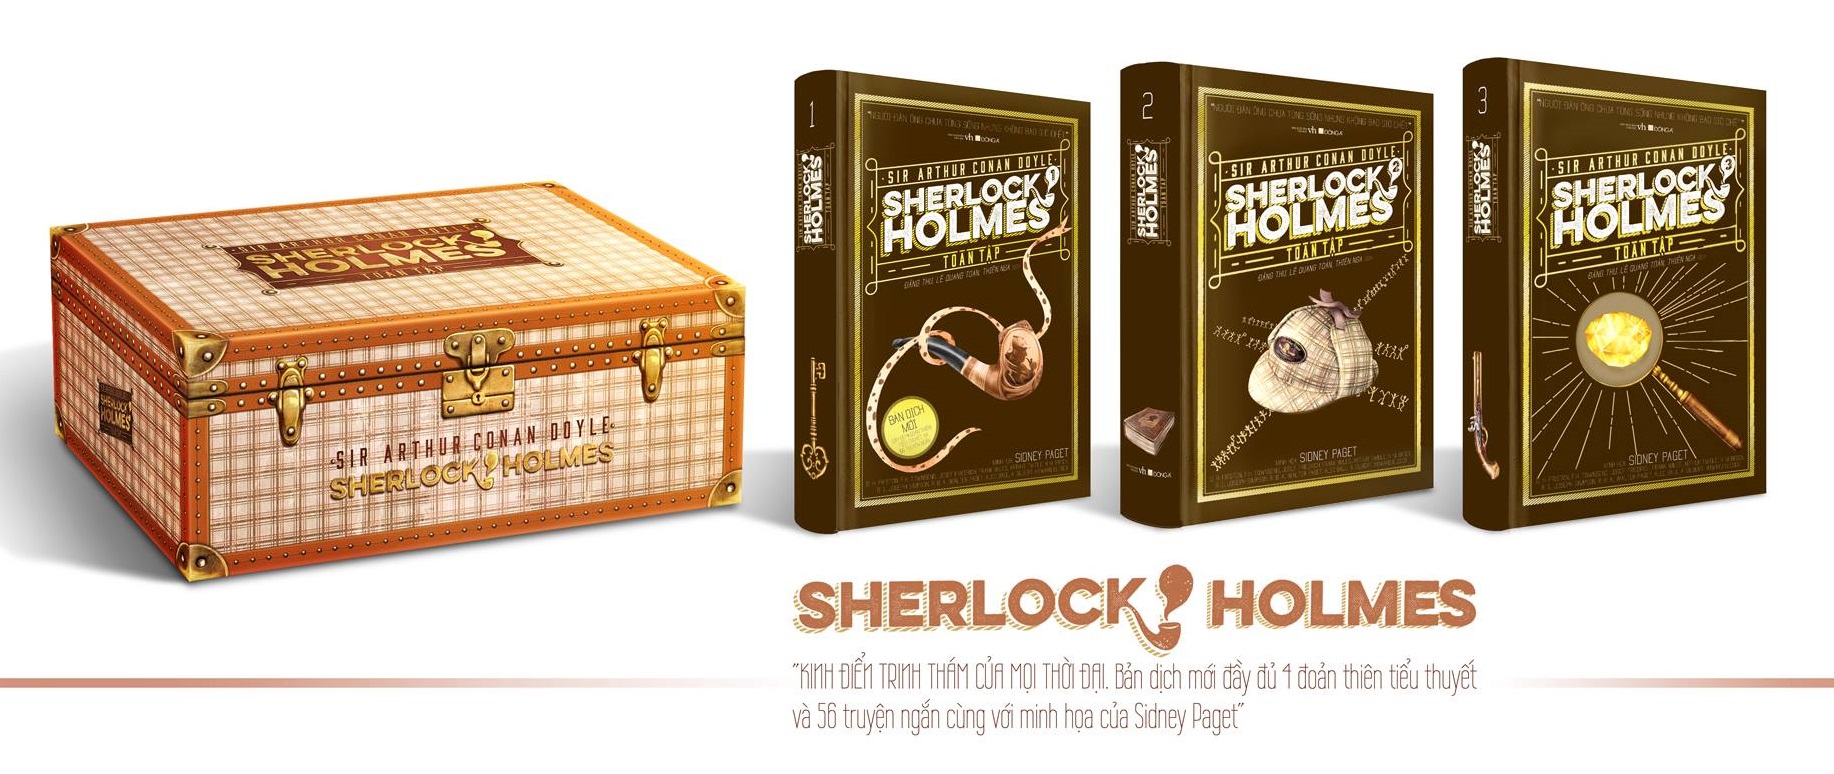 Sherlock Holmes Toàn Tập Bộ Hộp 3 Tập - Bìa Cứng PDF